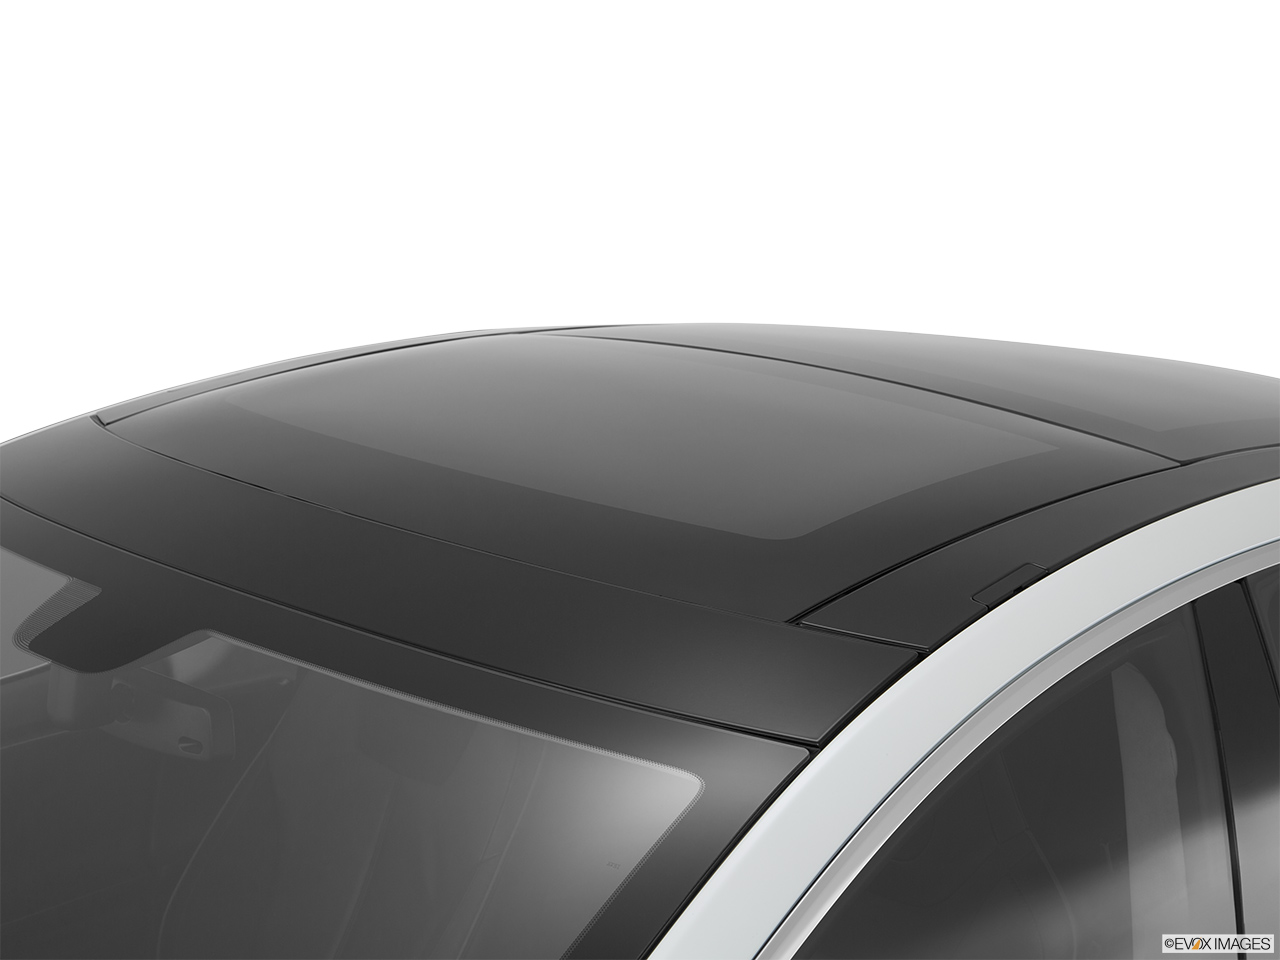 2014 Tesla Model S Performance Sunroof/moonroof. 